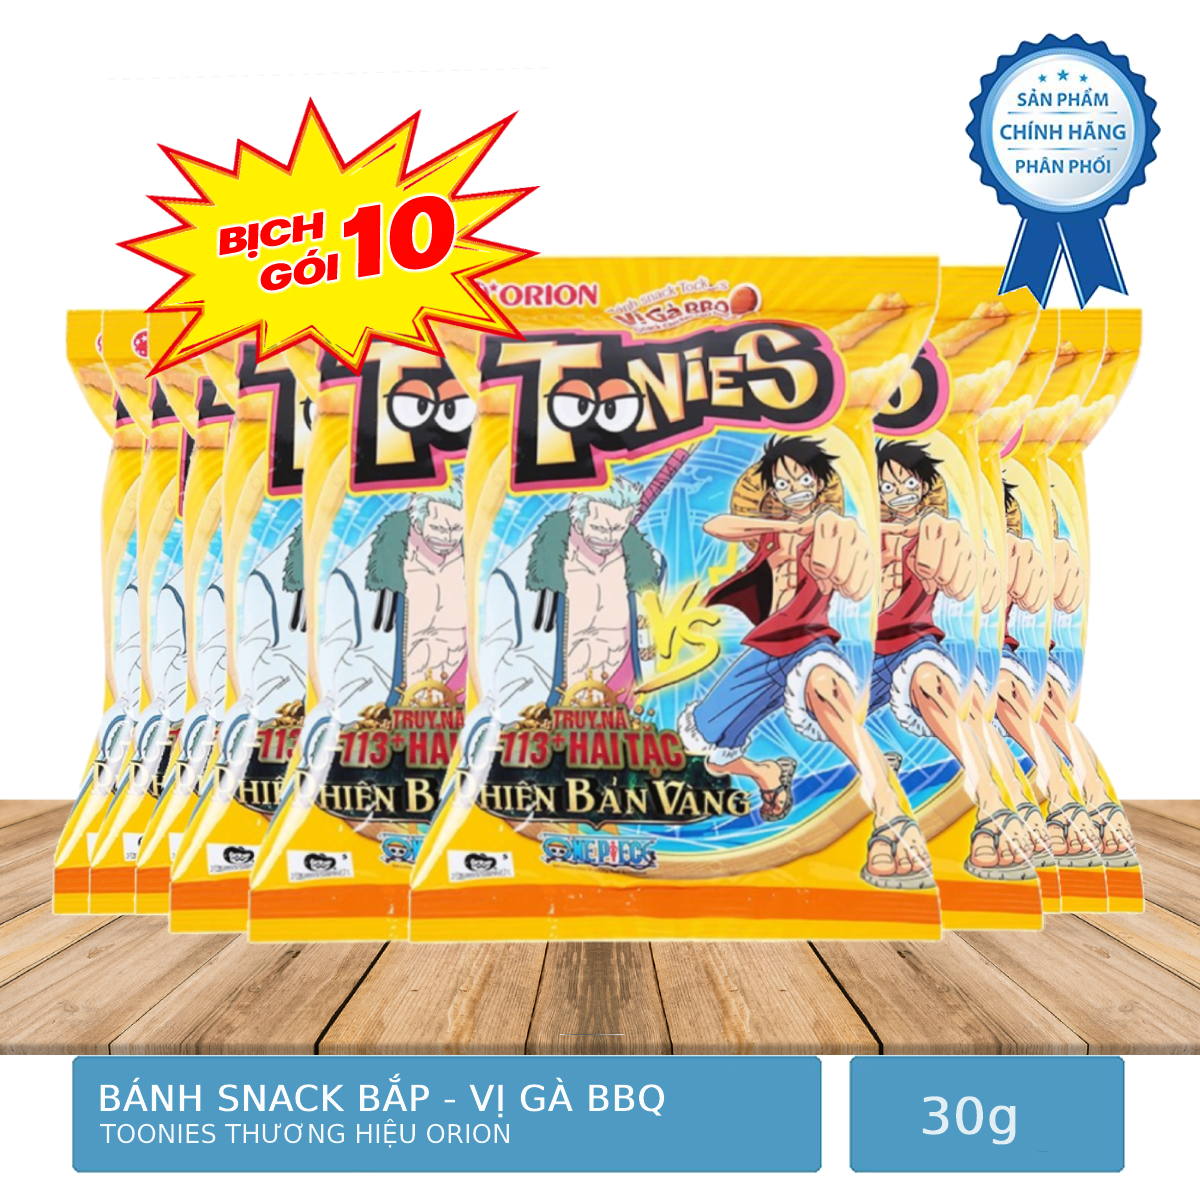 Bịch 10 Gói Bánh Bắp Snack Toonies Thương Hiệu Orion Gói 30g - Vị Gà BBQ